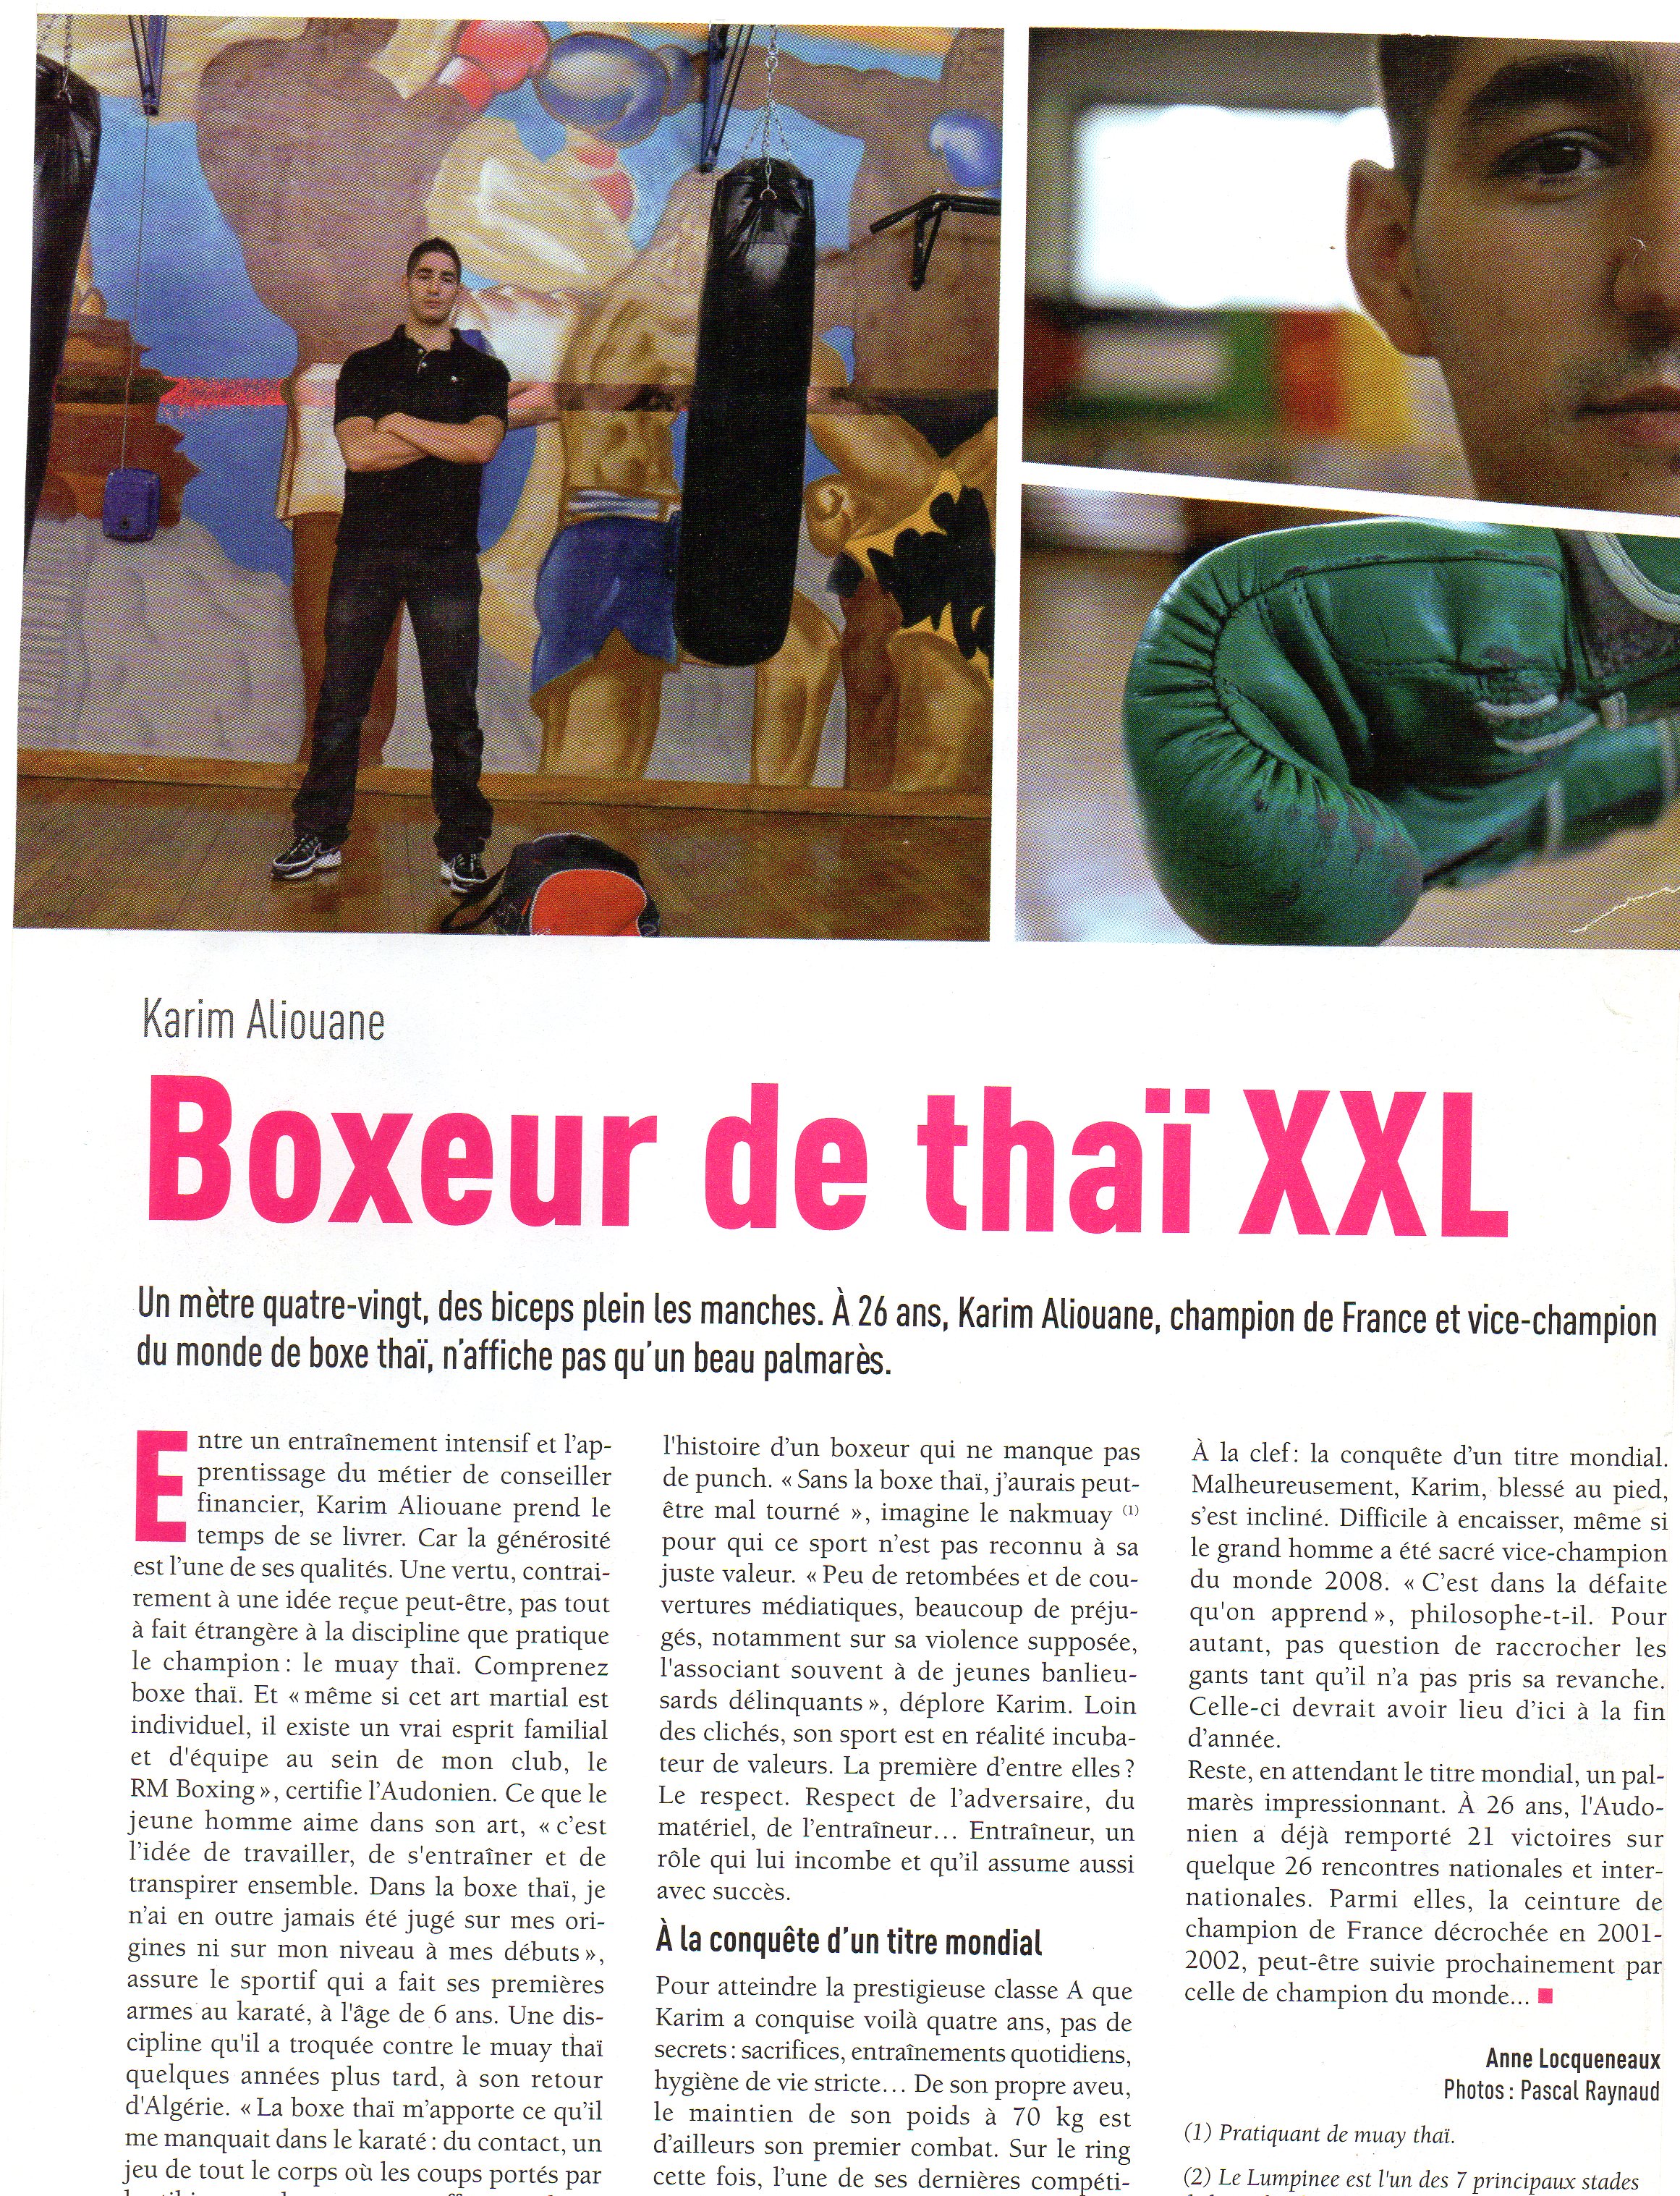 boxeur de thai xxl